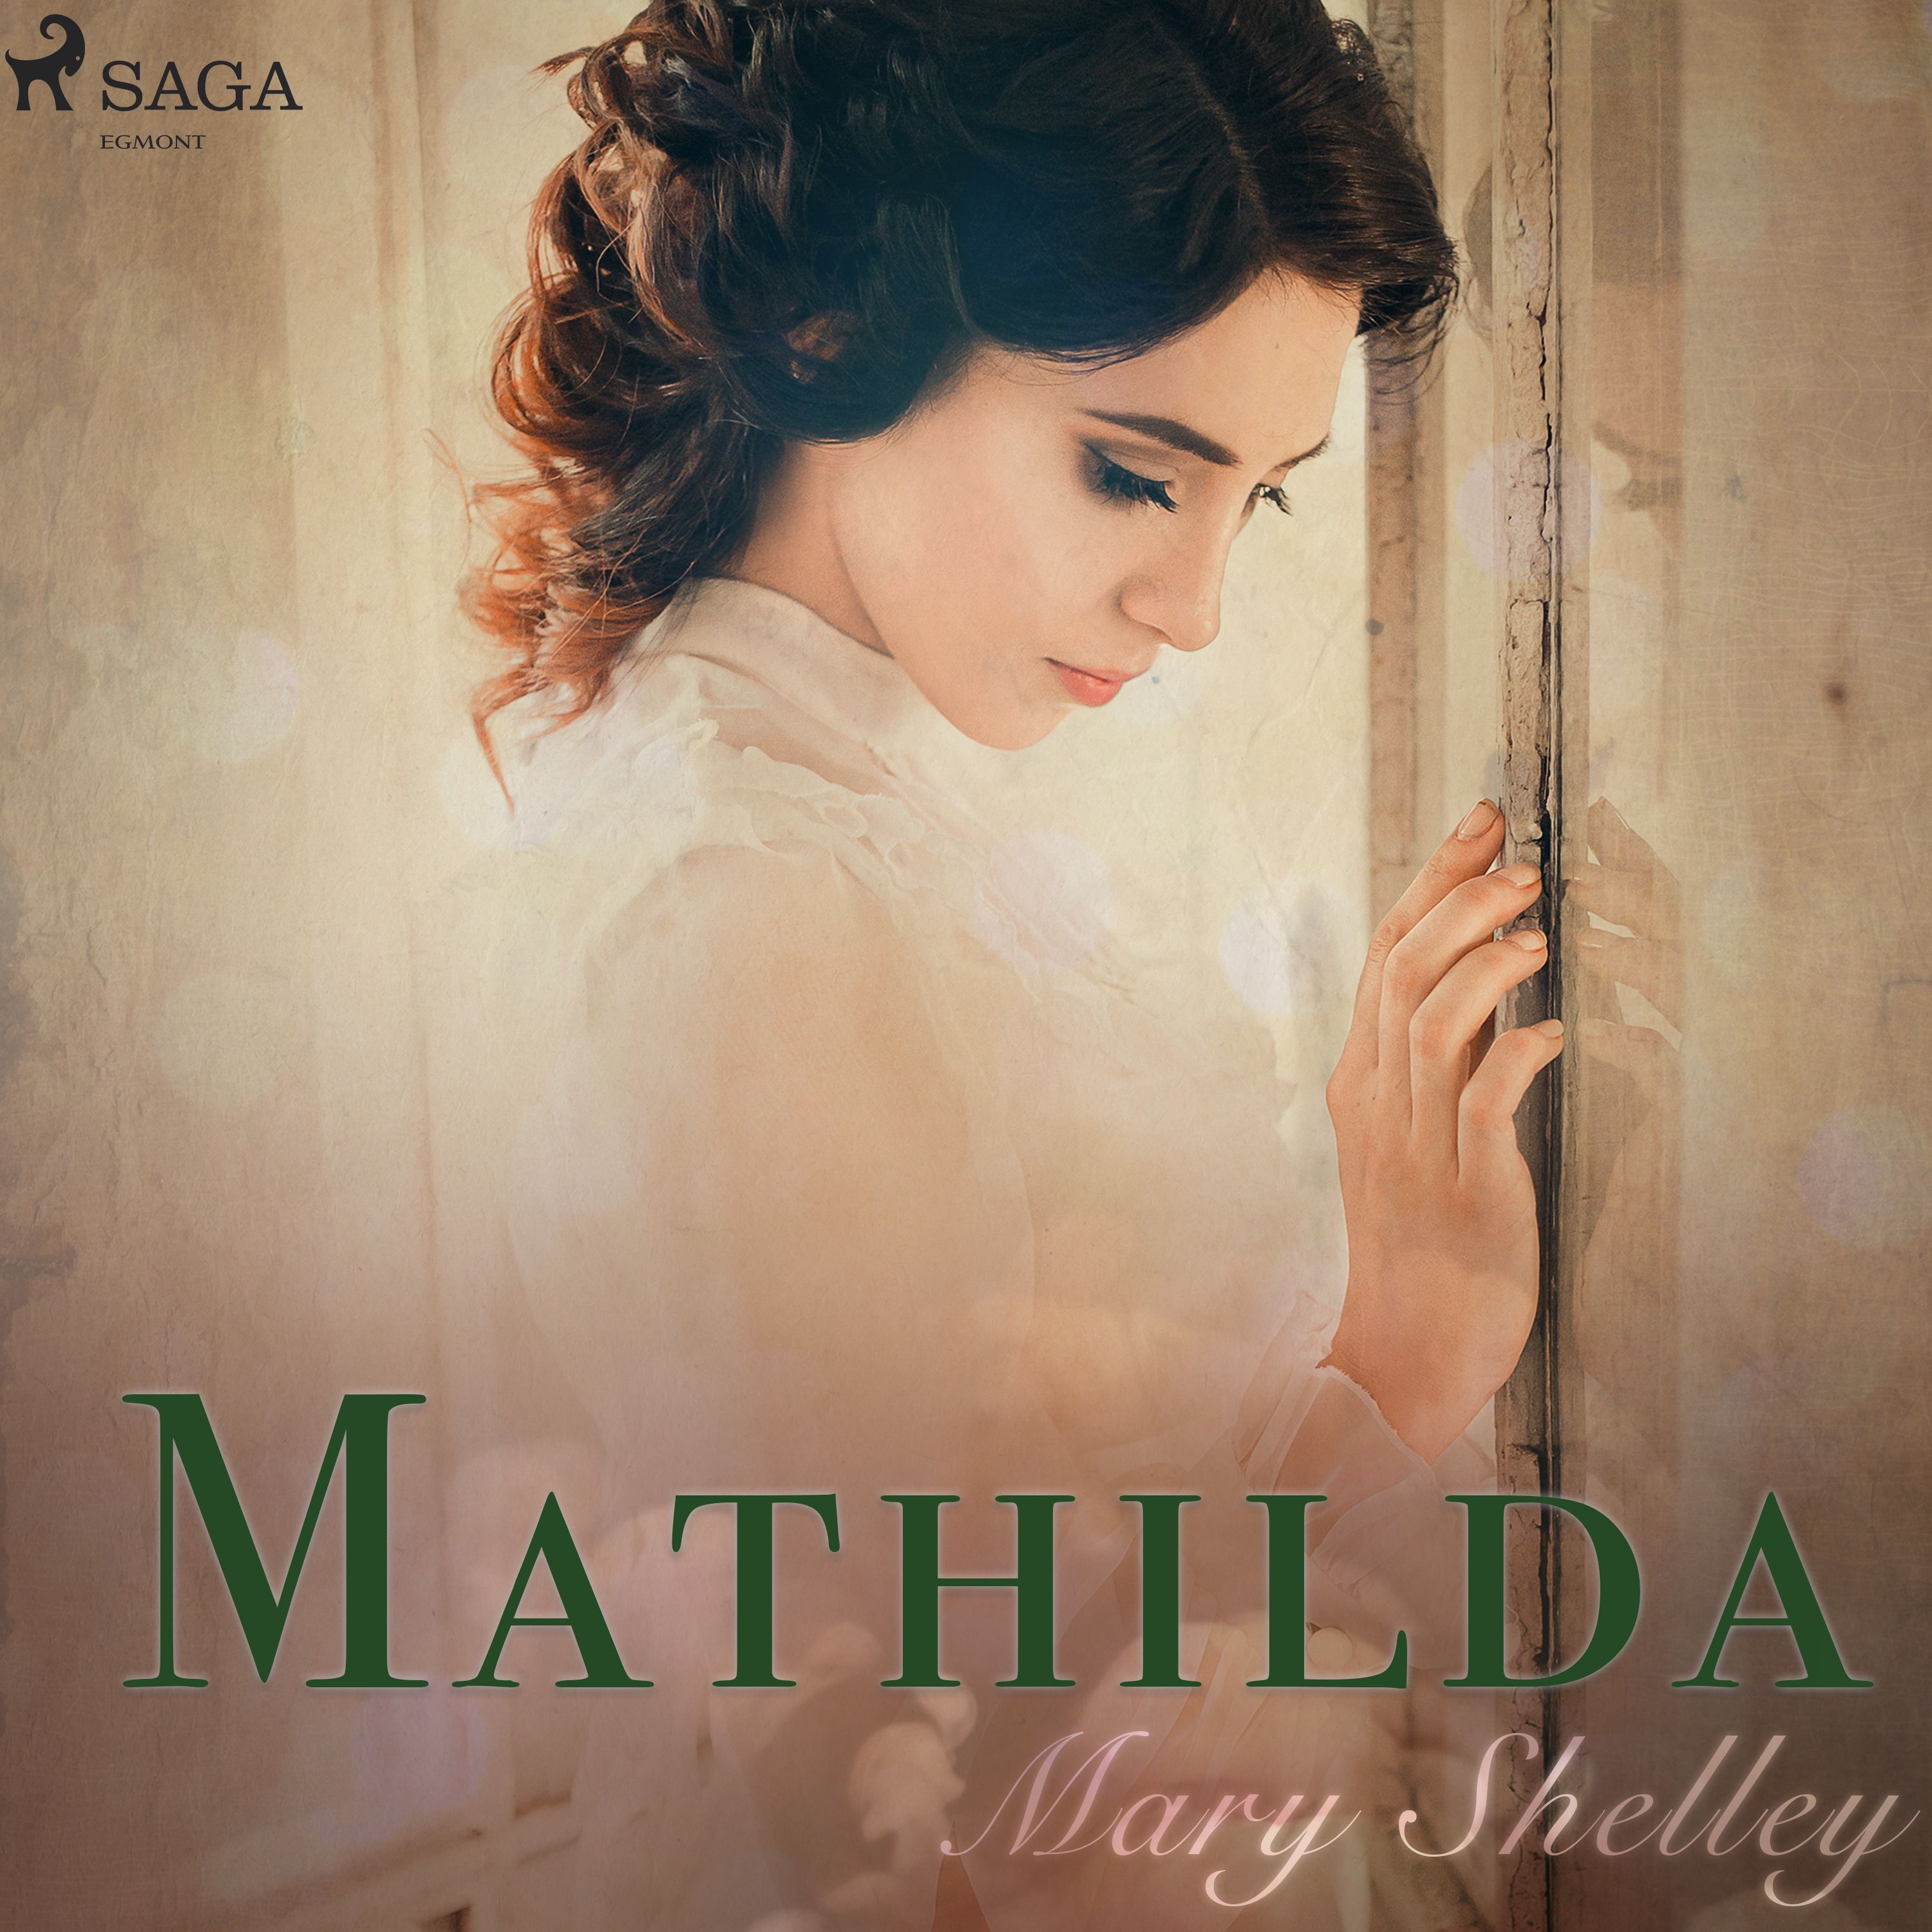 Mathilda, ljudbok av Mary Wollstonecraft Shelley